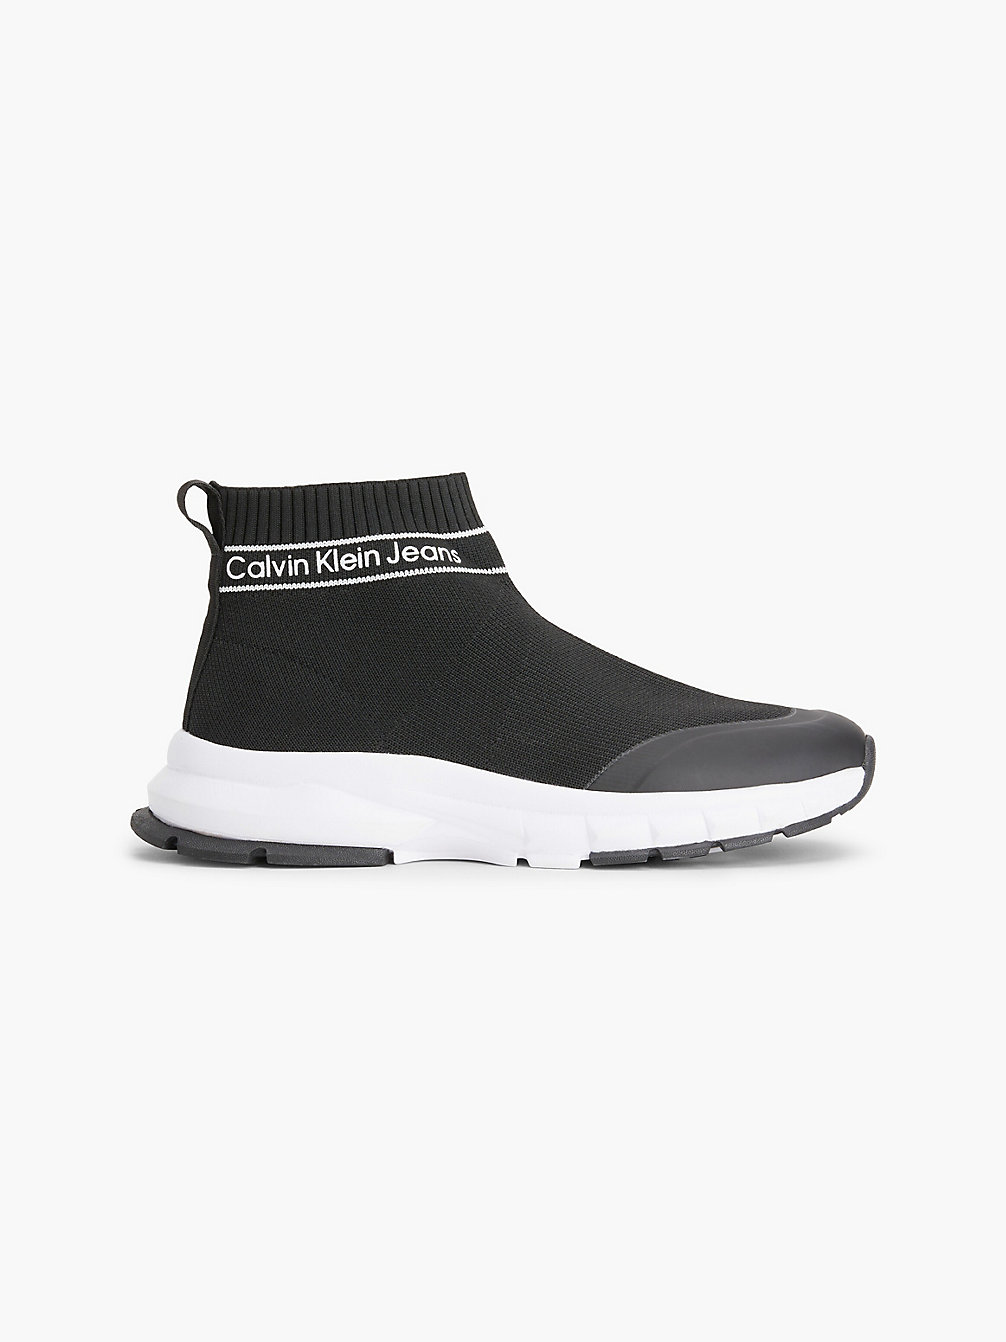 BLACK High Top Sock-Sneakers Für Kinder undefined kids unisex Calvin Klein